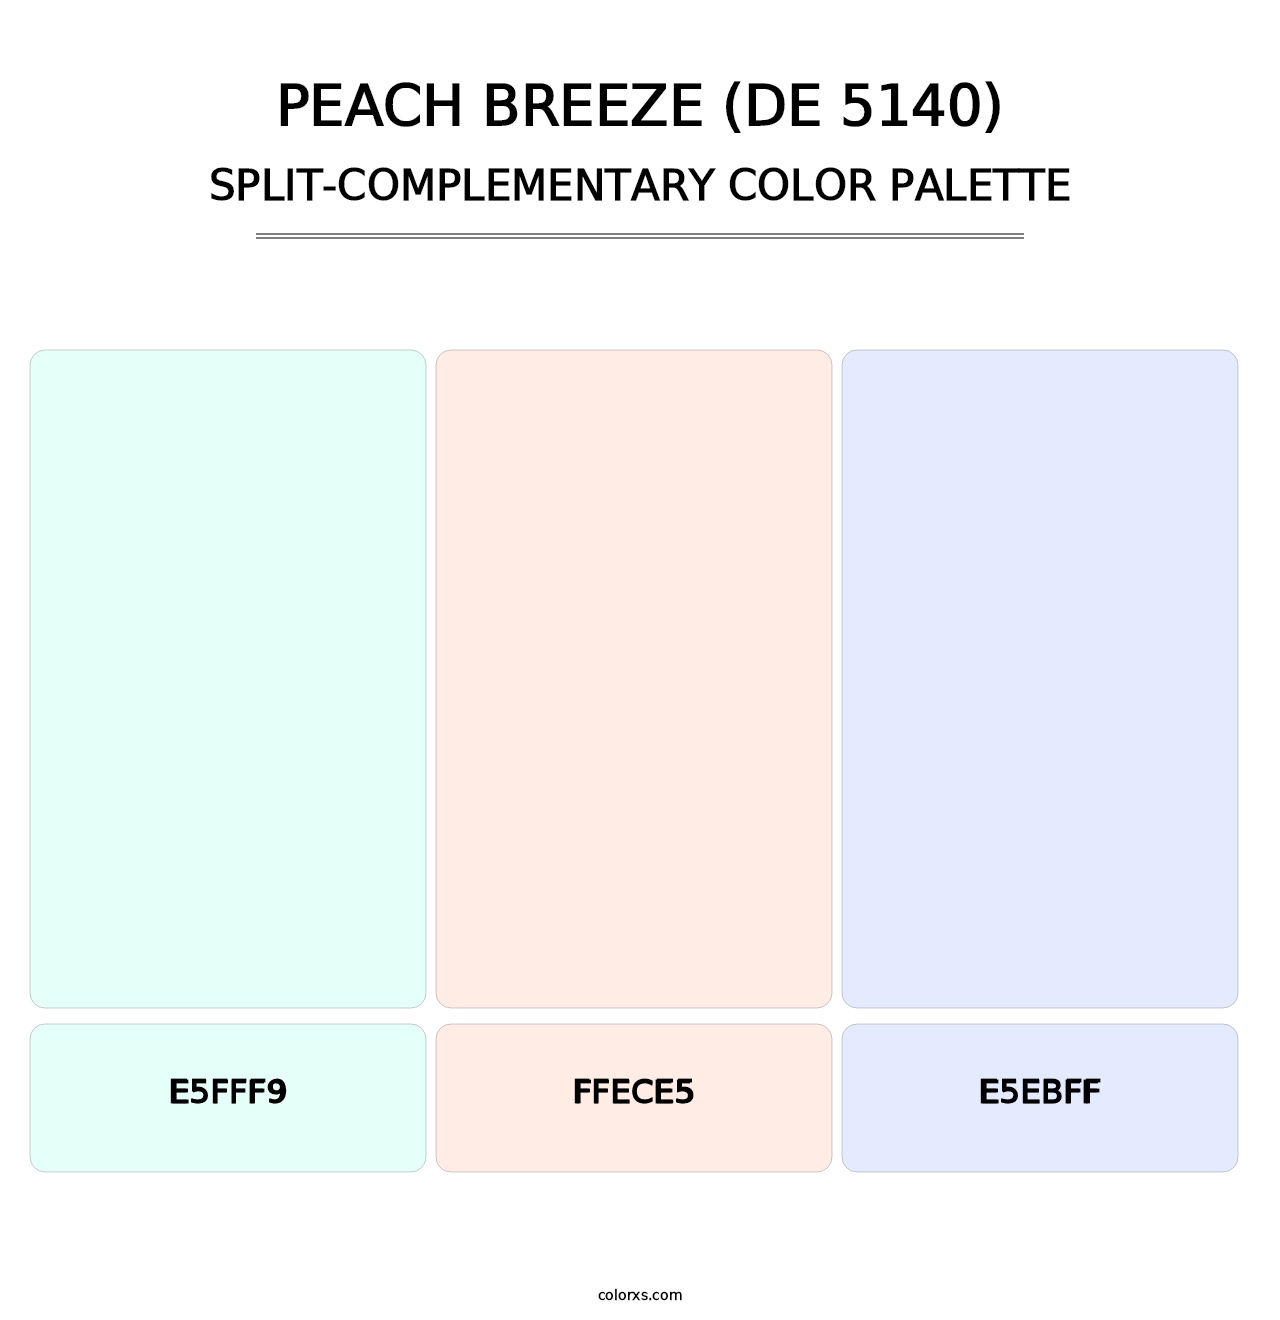 Peach Breeze (DE 5140) - Split-Complementary Color Palette